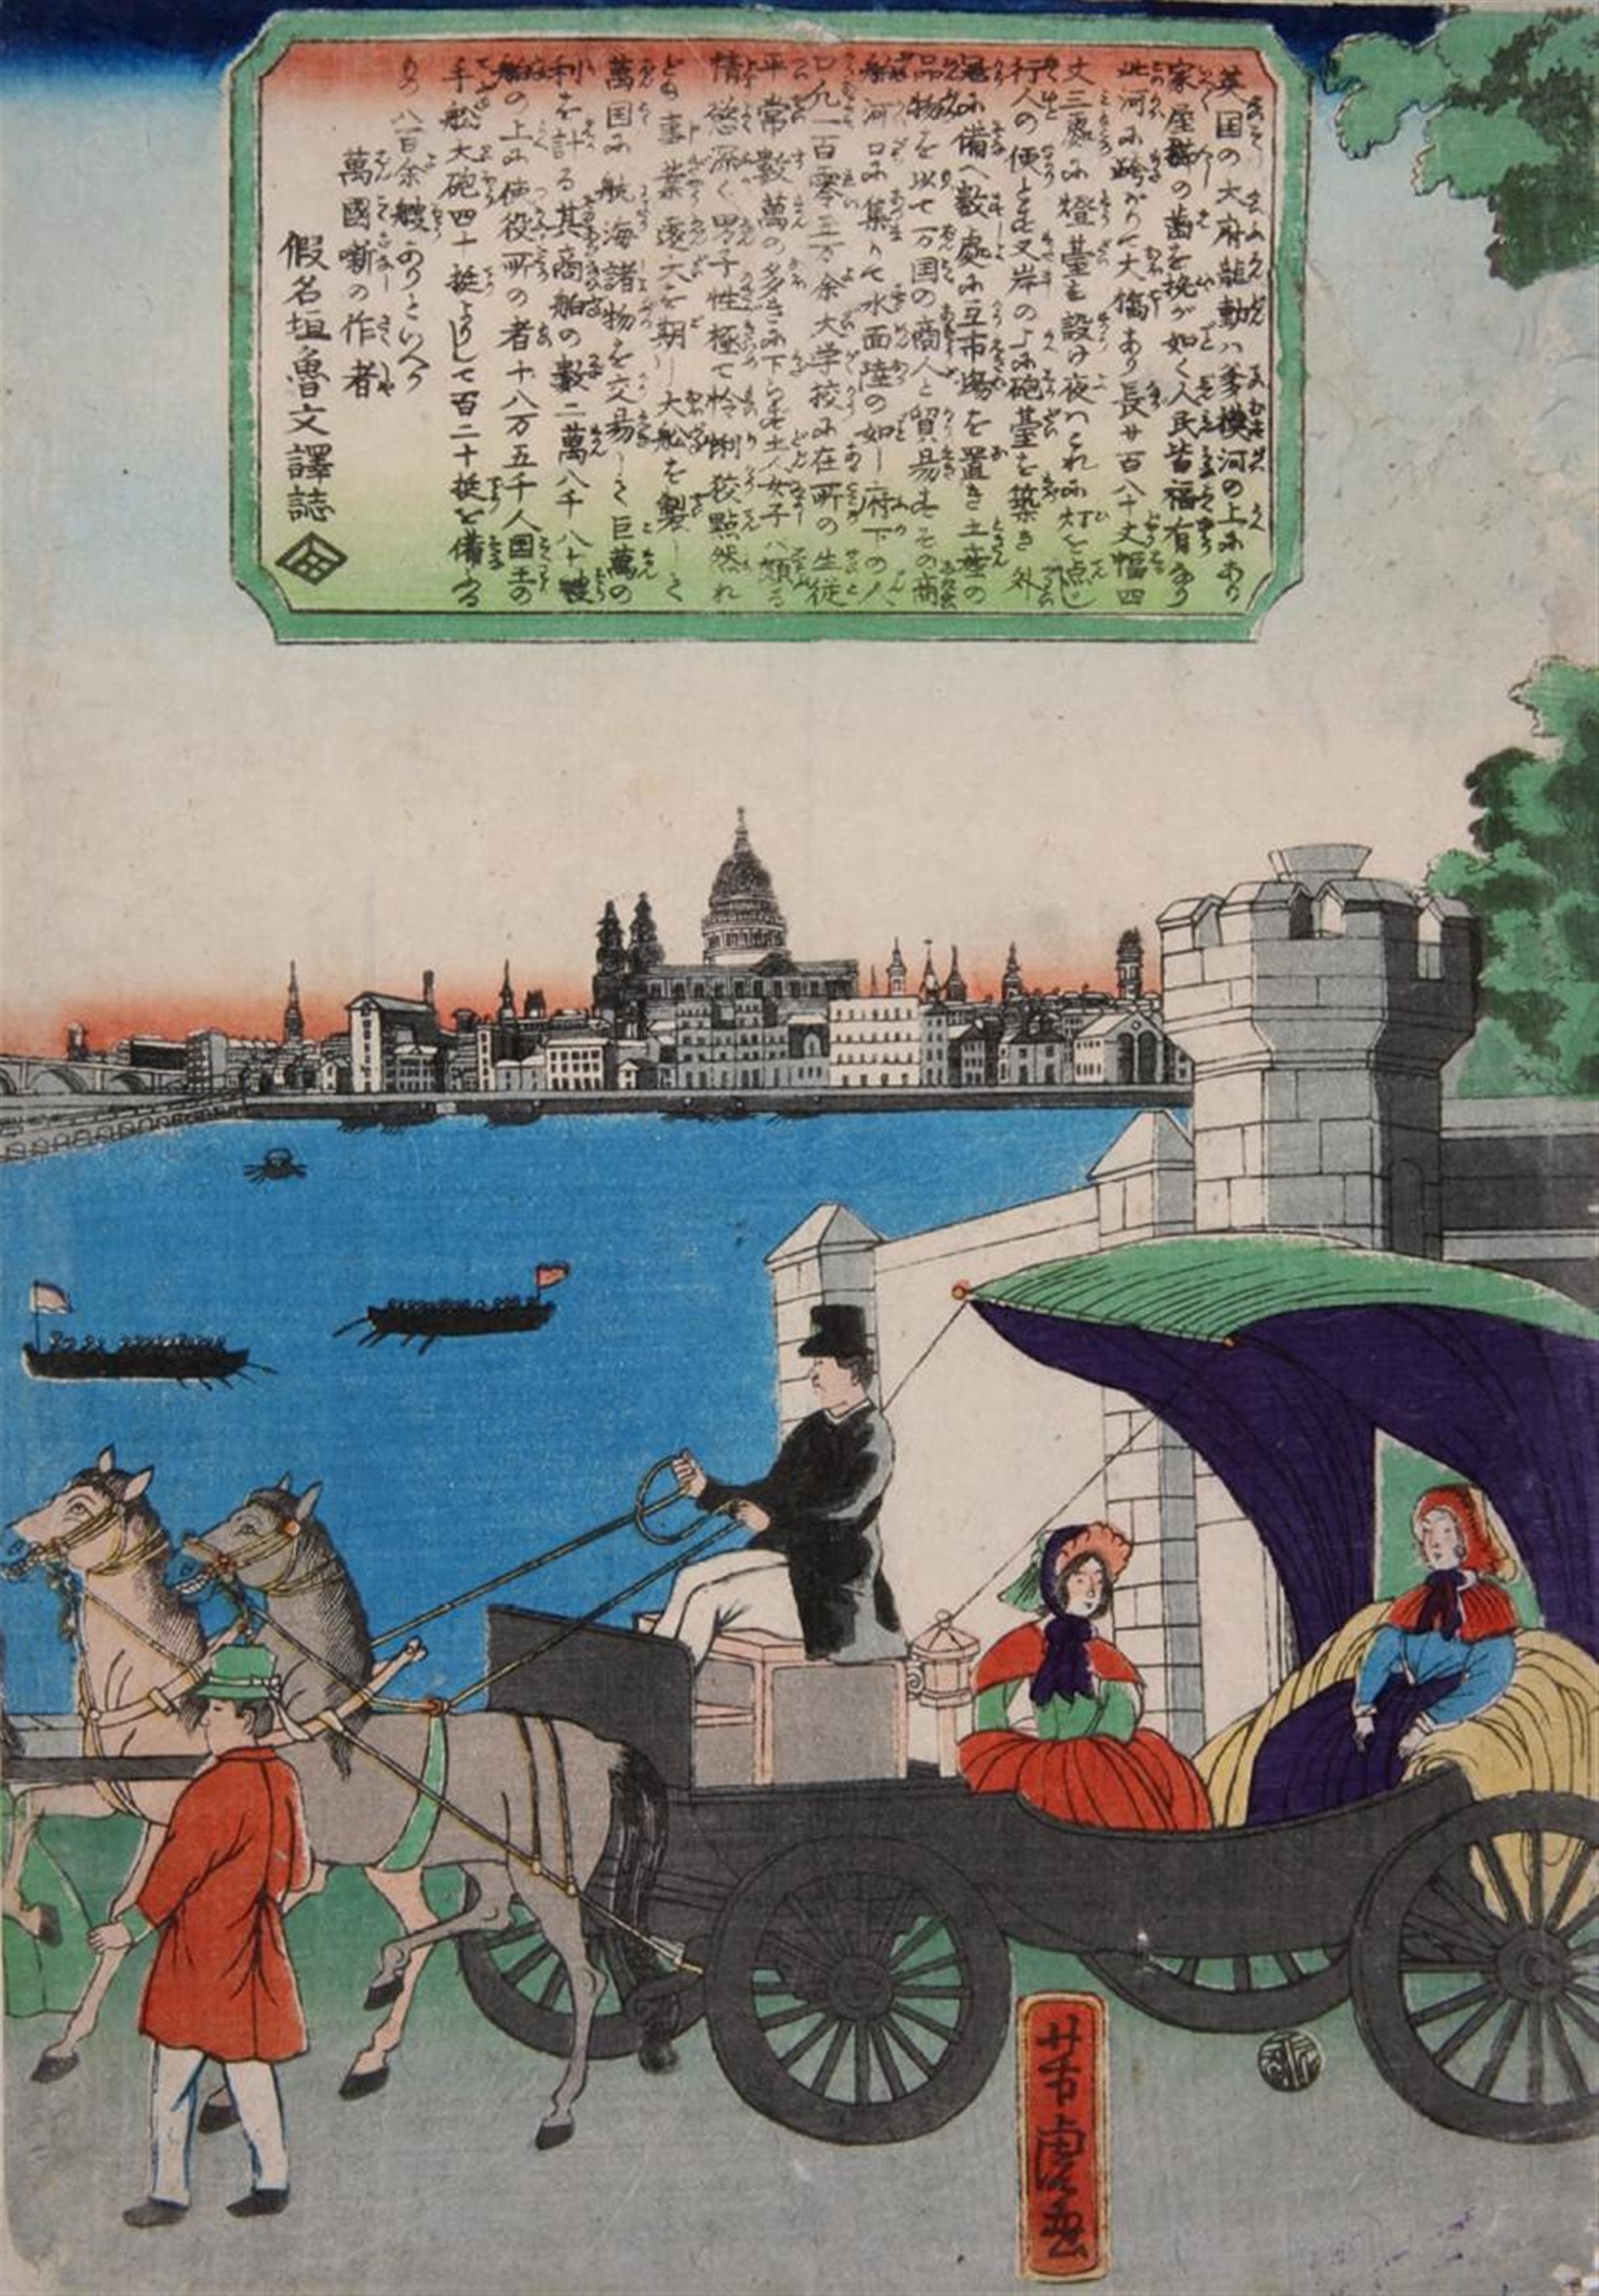 Utagawa Yoshikazu
Utagawa Yoshitora - Utagawa Yoshitora (act. about 1836–1887) & Utagawa Yoshikazu (act. 1848-1870)